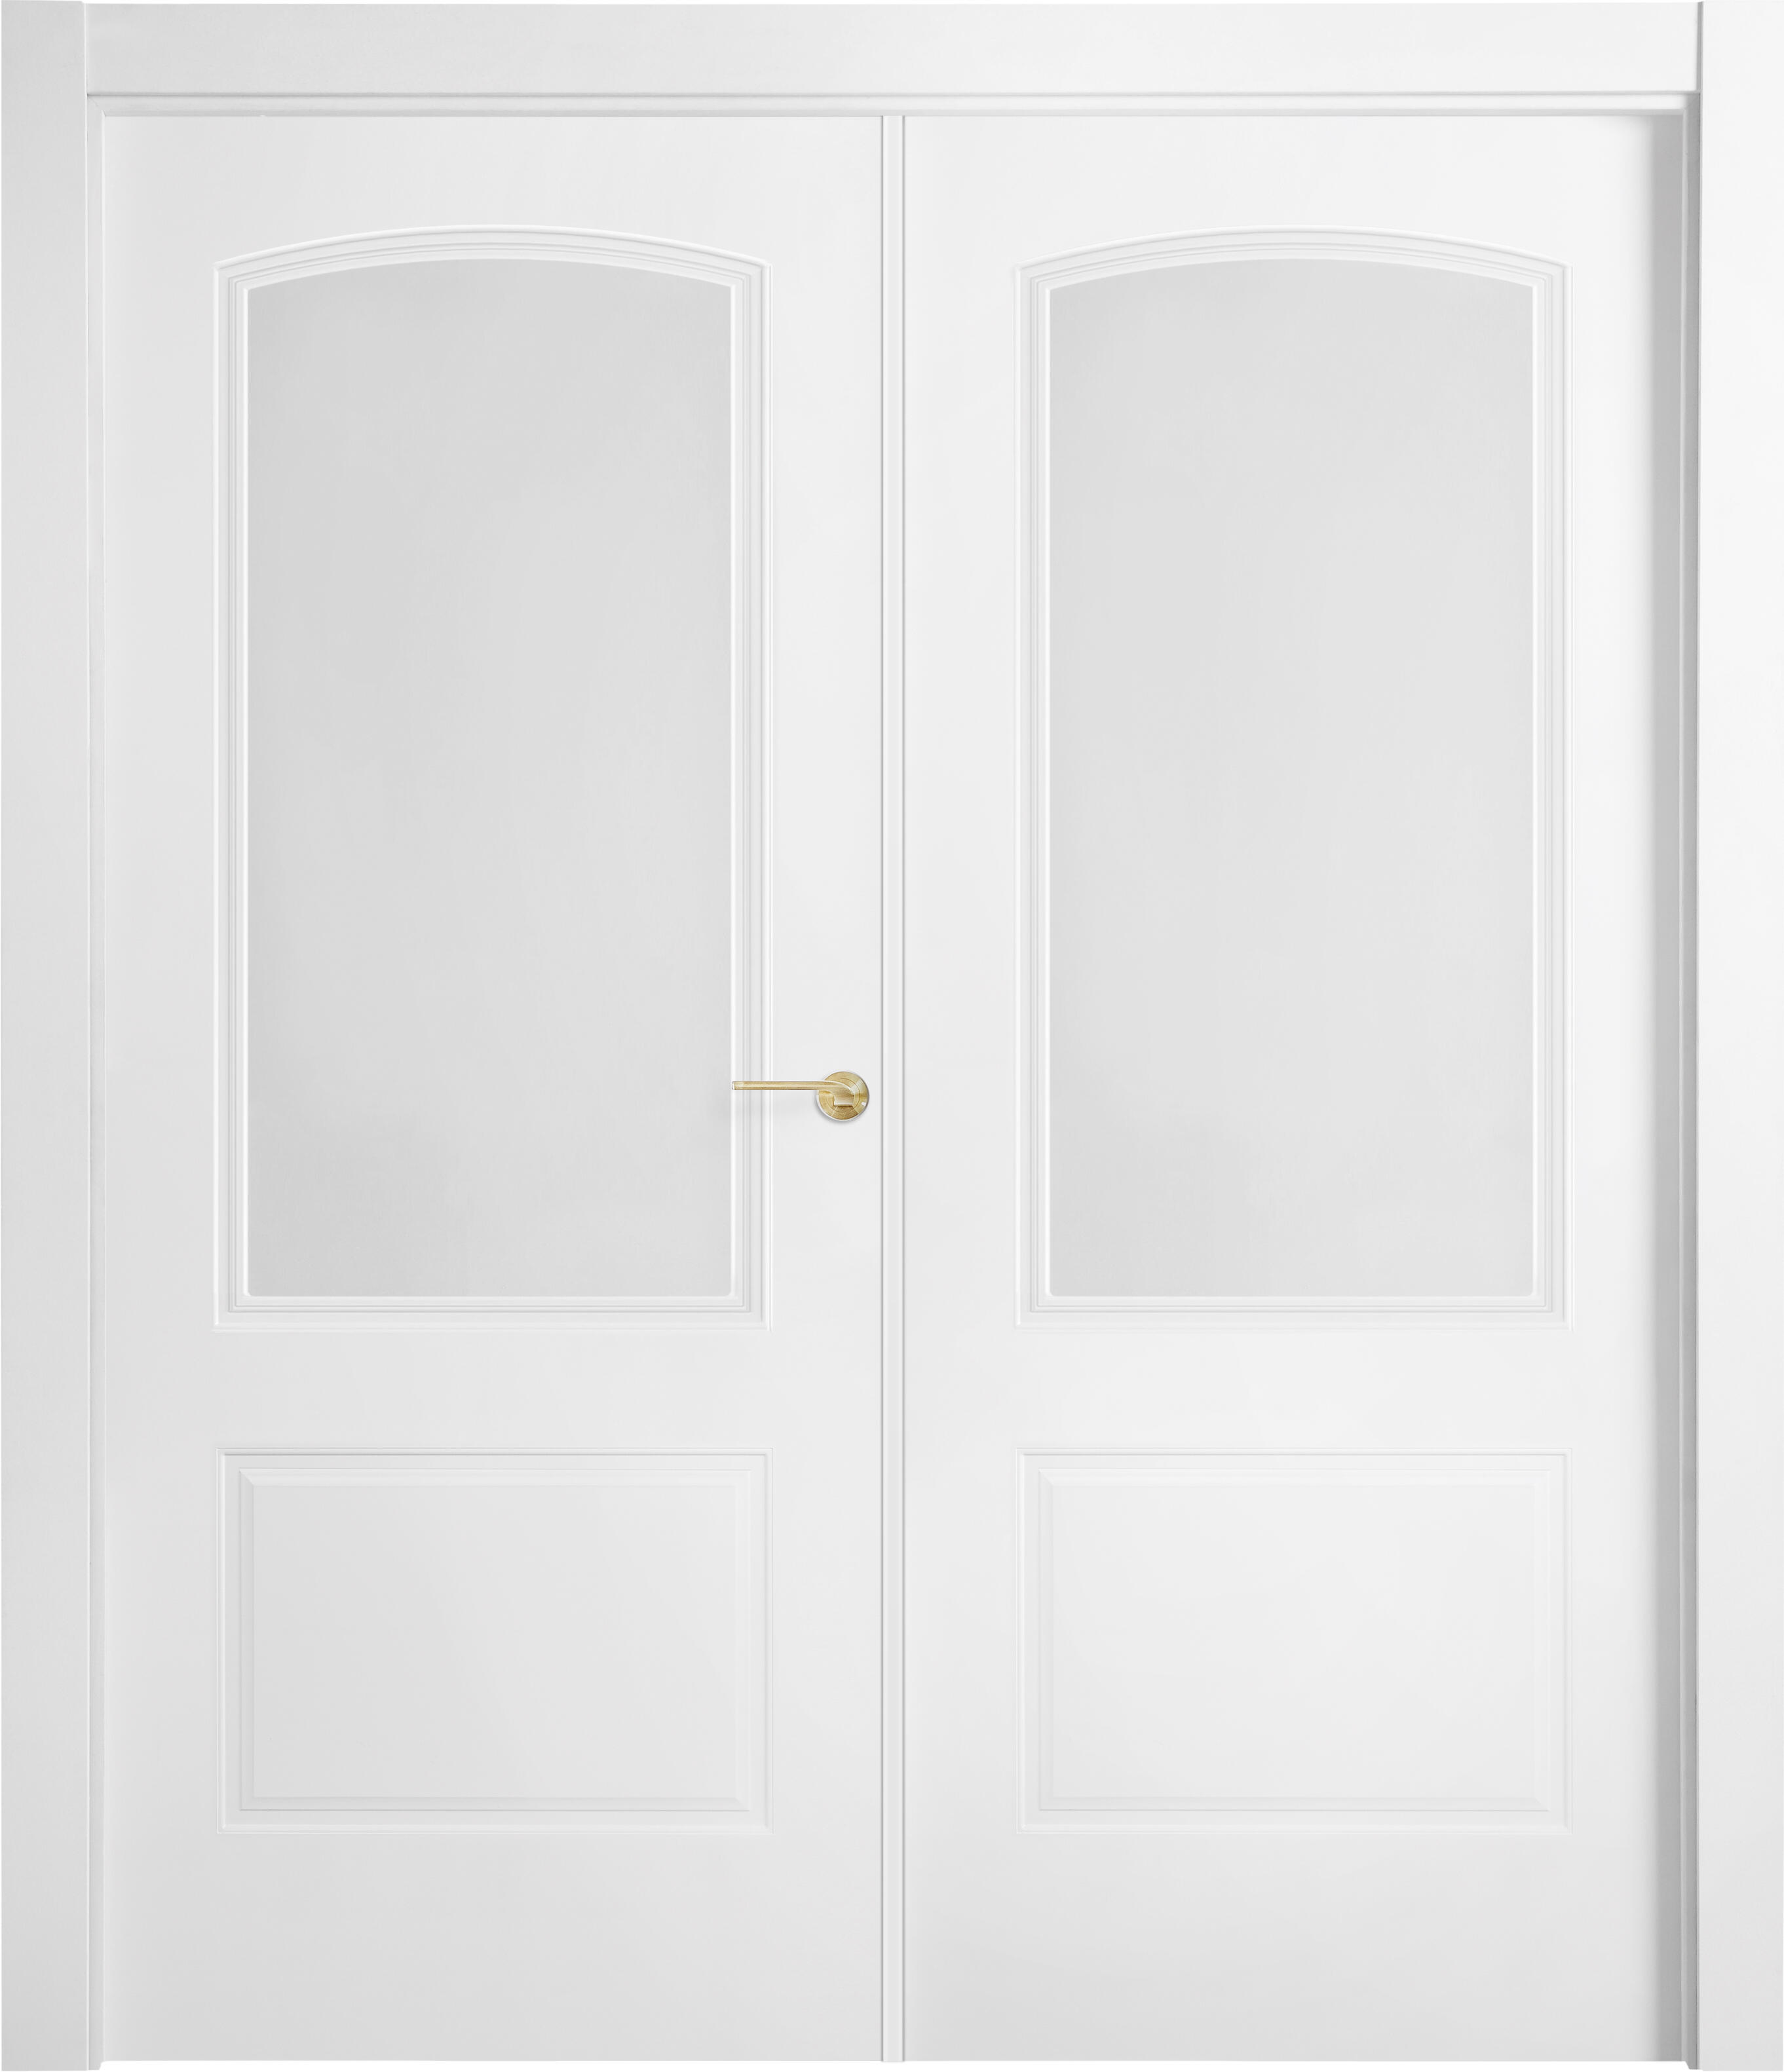 Puerta berlin plus blanco apertura derecha con cristal 125cm